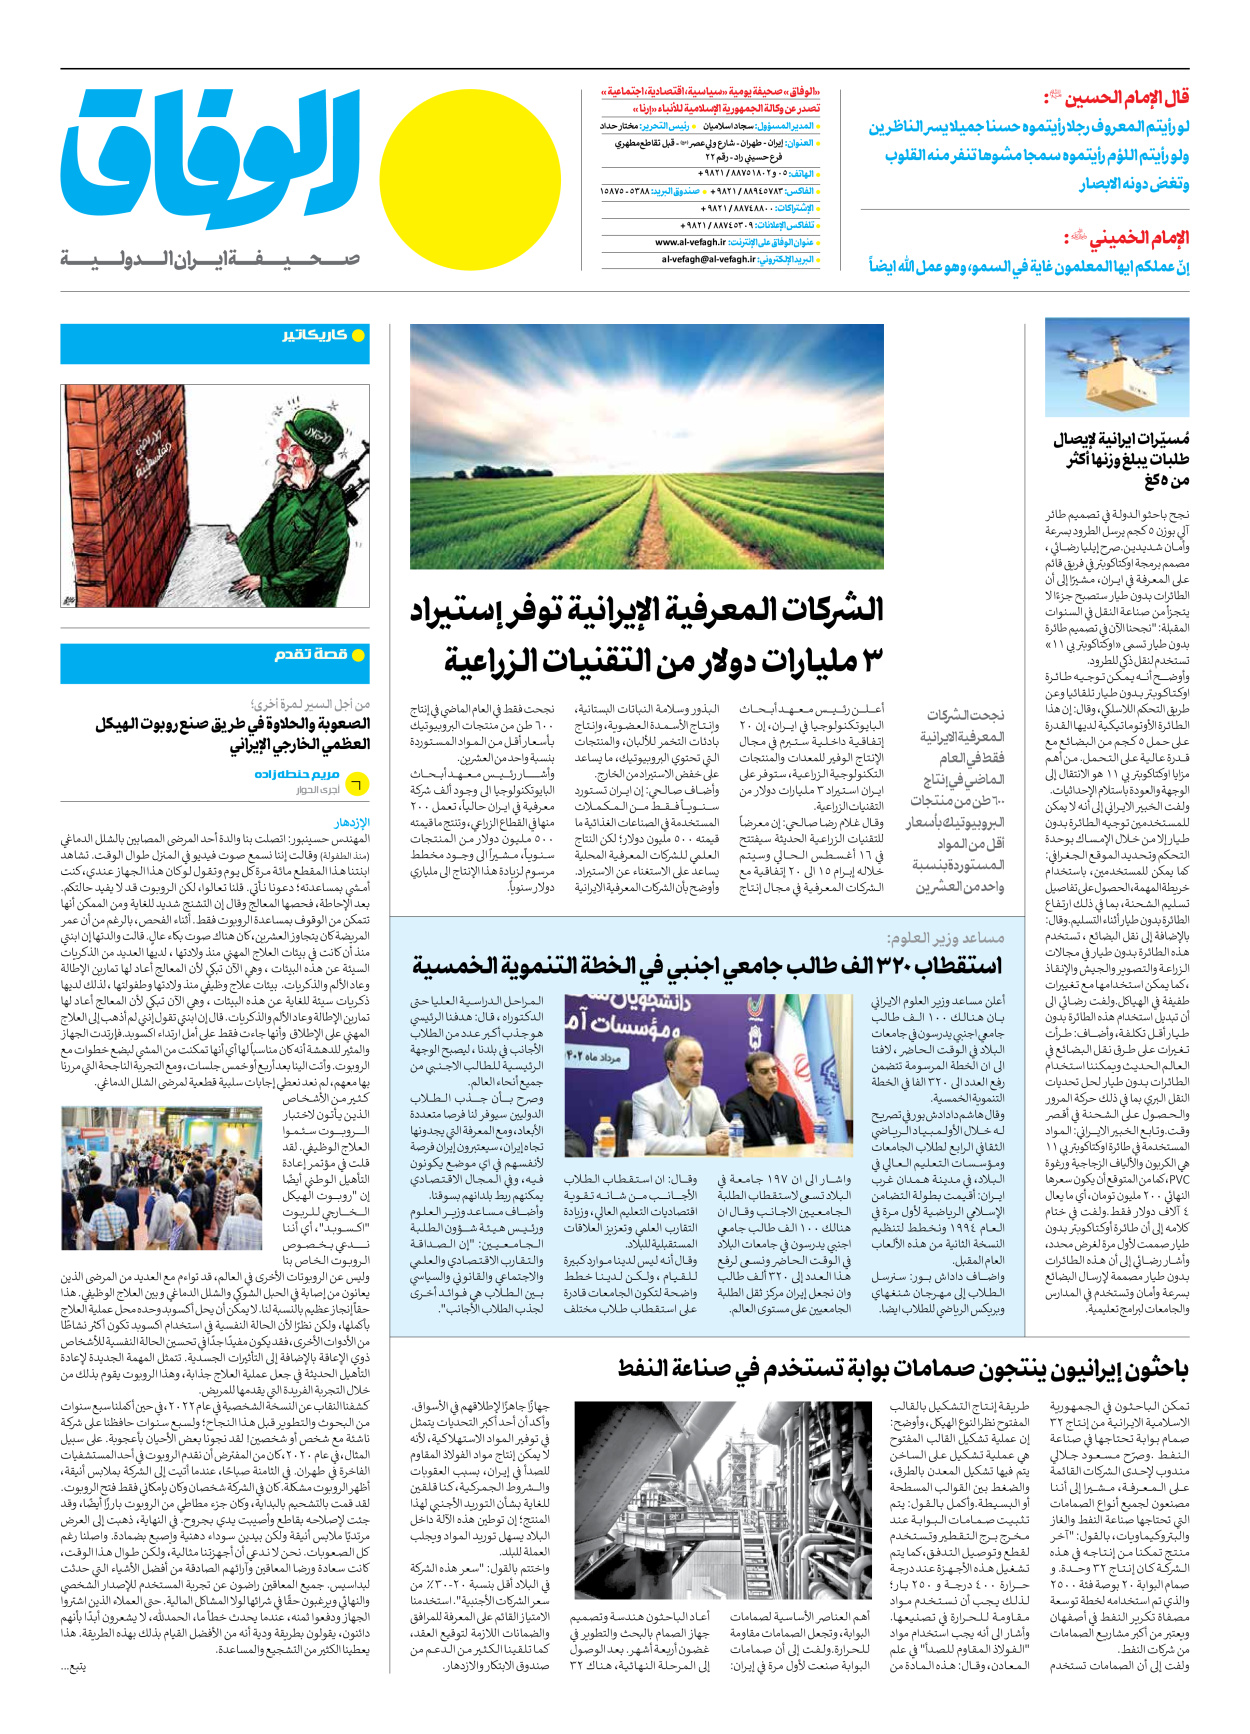 صحیفة ایران الدولیة الوفاق - العدد سبعة آلاف وثلاثمائة وستة - ١٤ أغسطس ٢٠٢٣ - الصفحة ۱۲